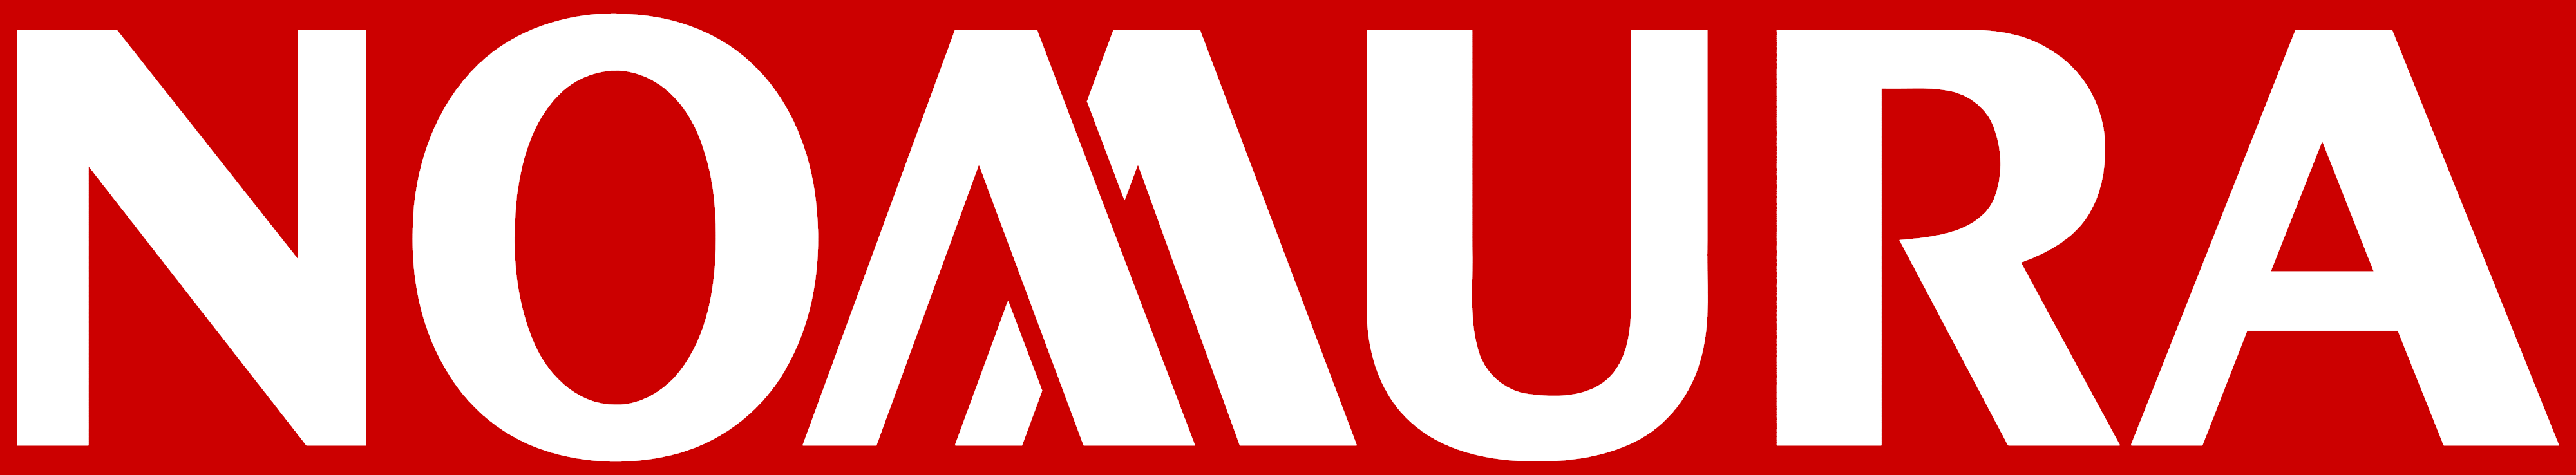 Nomura logo